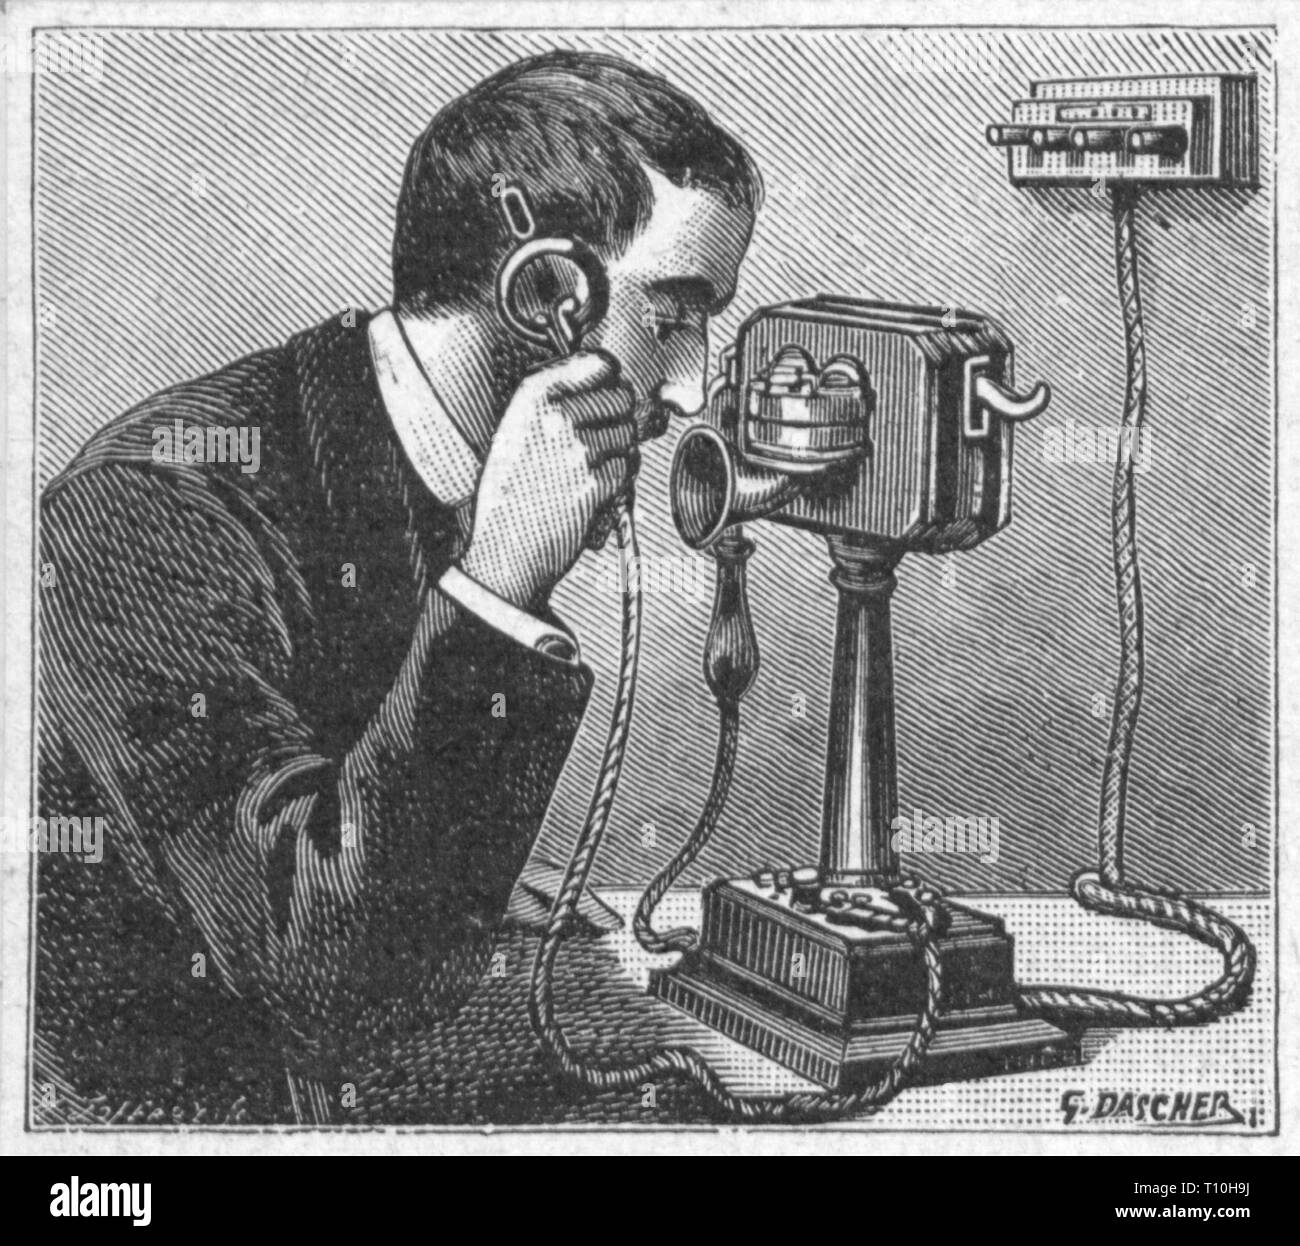 Mail, por teléfono, llamando al hombre, después de dibujar el grabado en madera por Georges Adolphe Dascher, comienzos del siglo XX, teléfono, teléfonos, Telecom, la transferencia de información, comunicación, comunicaciones, technics, telecomunicaciones, telecomunicaciones, anillo, buzz, anillos, llamadas telefónicas, llamadas telefónicas, conversaciones telefónicas, llamadas telefónicas, llamadas de teléfono, conversaciones telefónicas, llamadas salientes, llamadas entrantes, llamadas de teléfono, llamando, llamada, gente, Francia, 1900, mail, correo, teléfono, teléfono, teléfonos celulares, hombre, hombres, histórico, histórico, Copyright del artista no ha de ser borrado Foto de stock